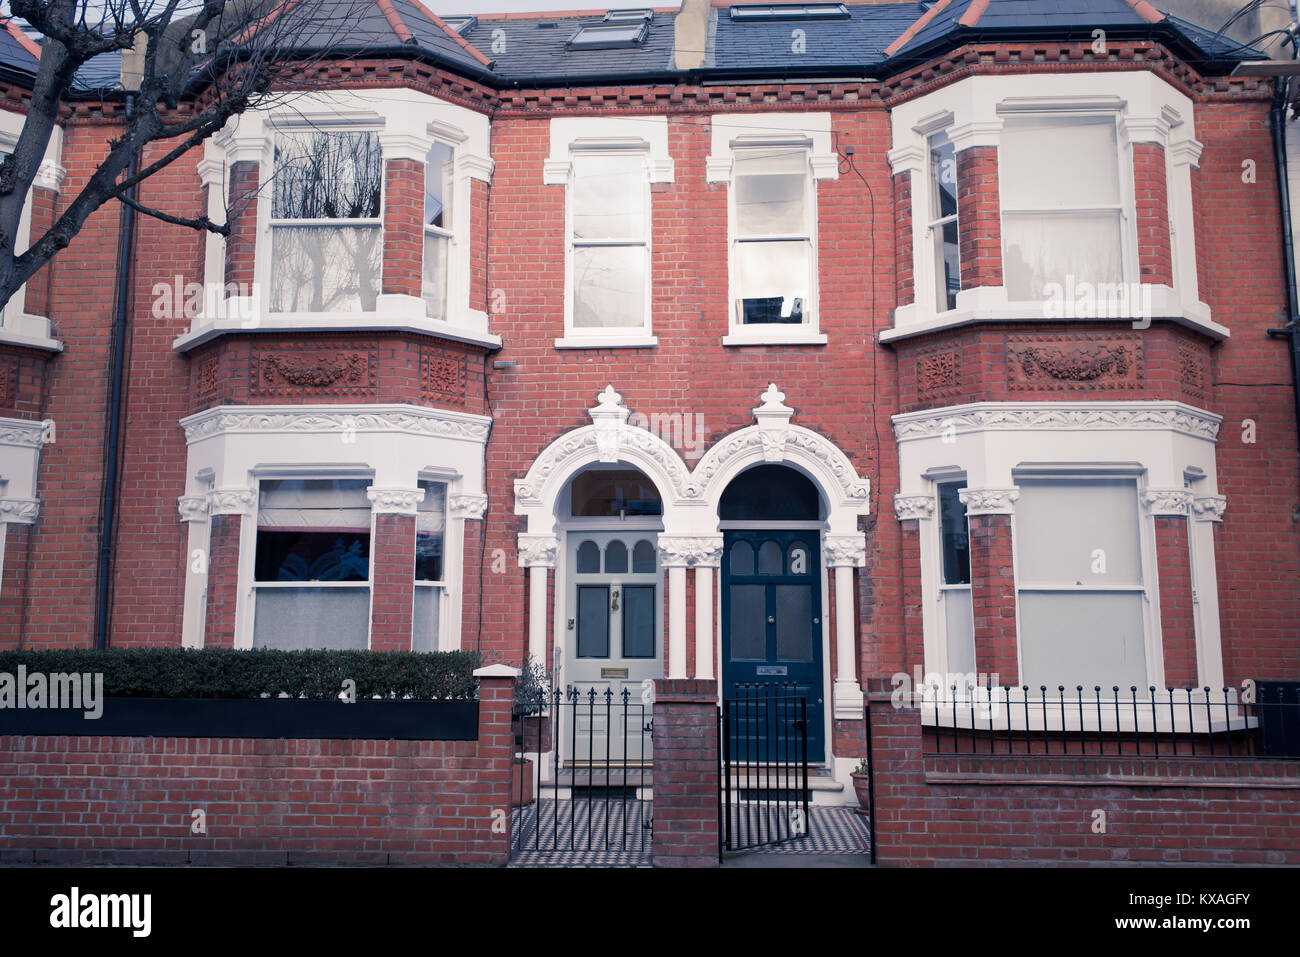 Façade d'une élégante maison victorienne restaurée en briques rouges et de finition blanc à Clapham, Londres du sud, Royaume-Uni. Effet mat Vintage Banque D'Images